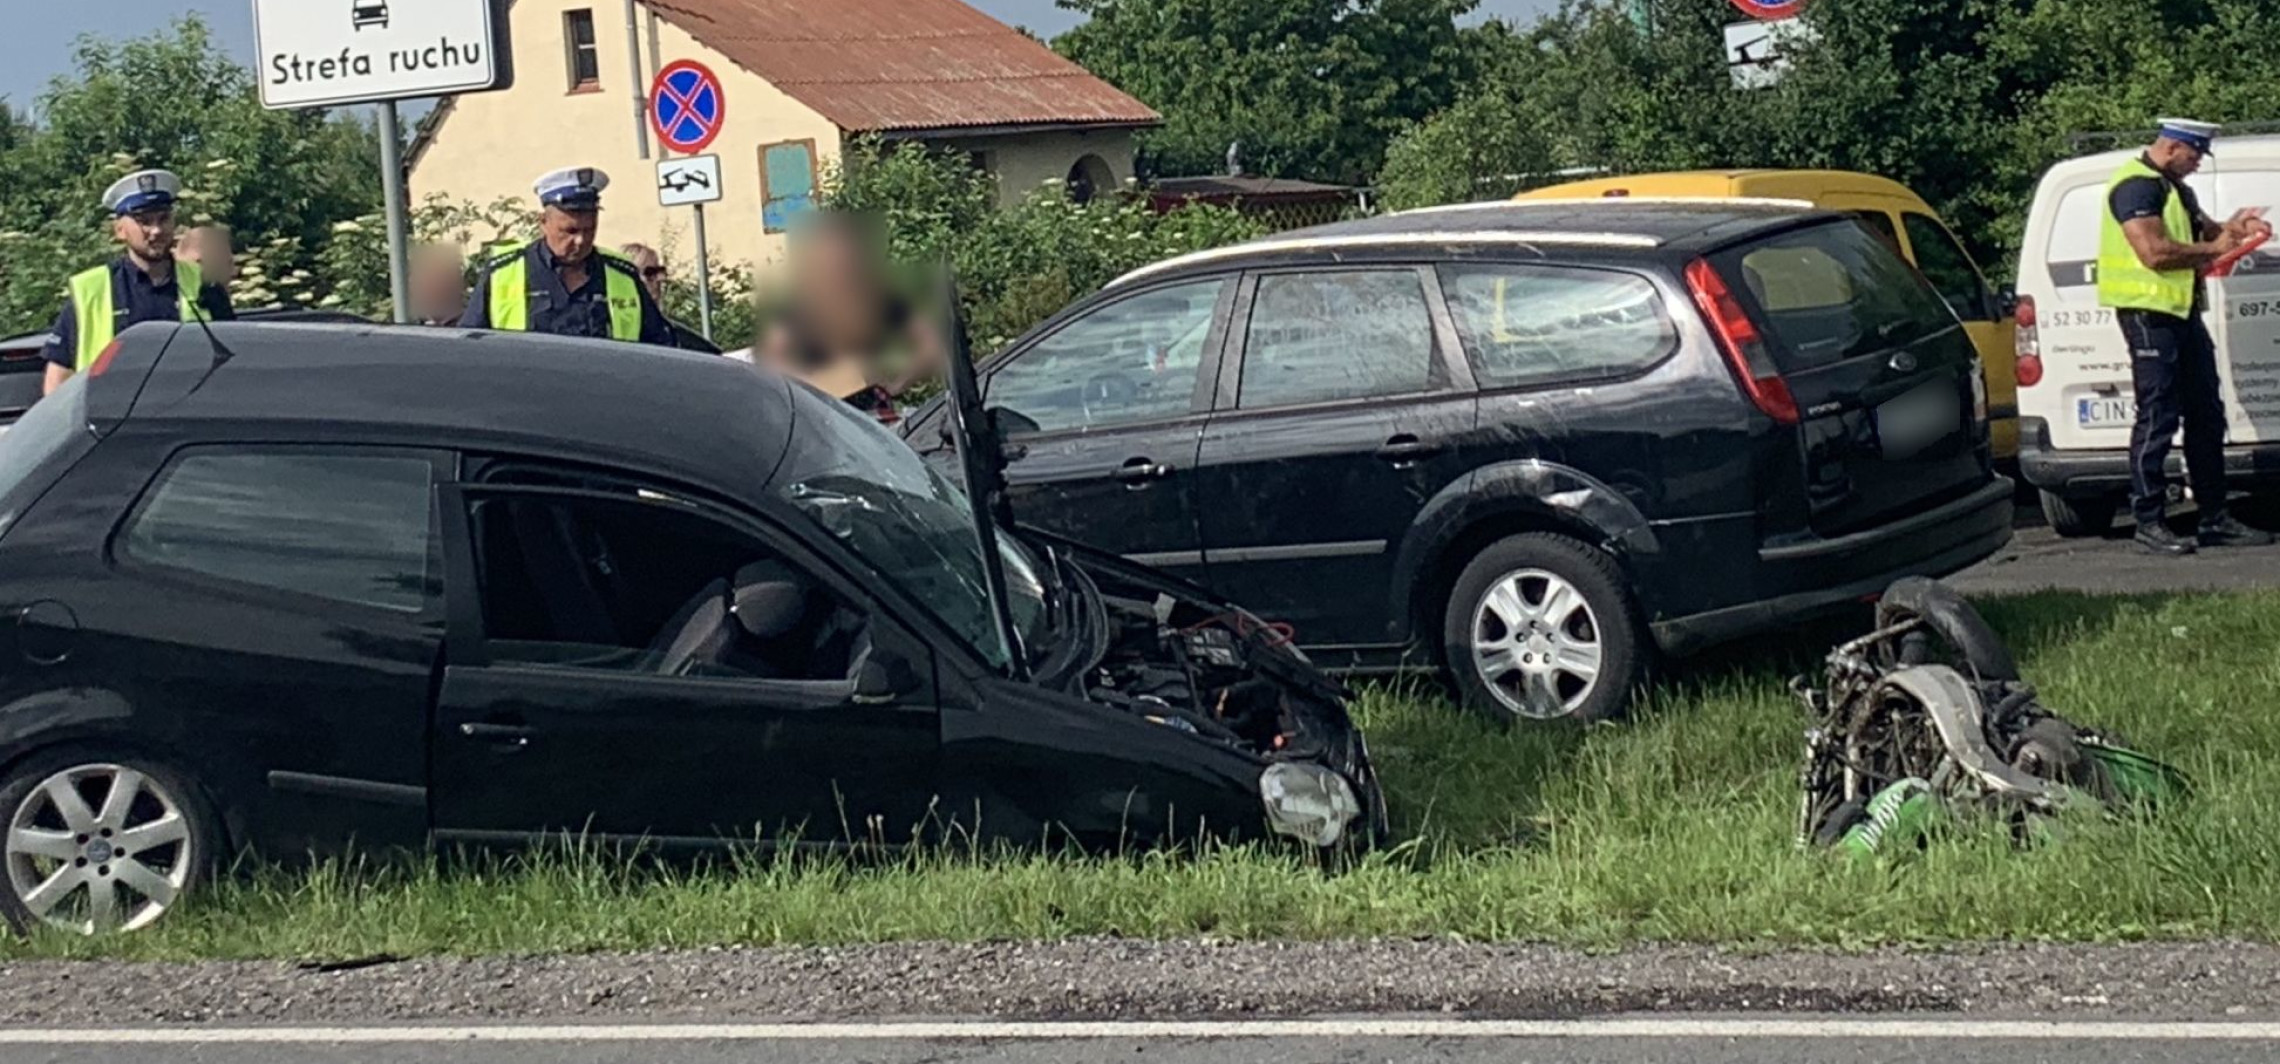 Inowrocław - 24-letni motocyklista zginął po zderzeniu z autem